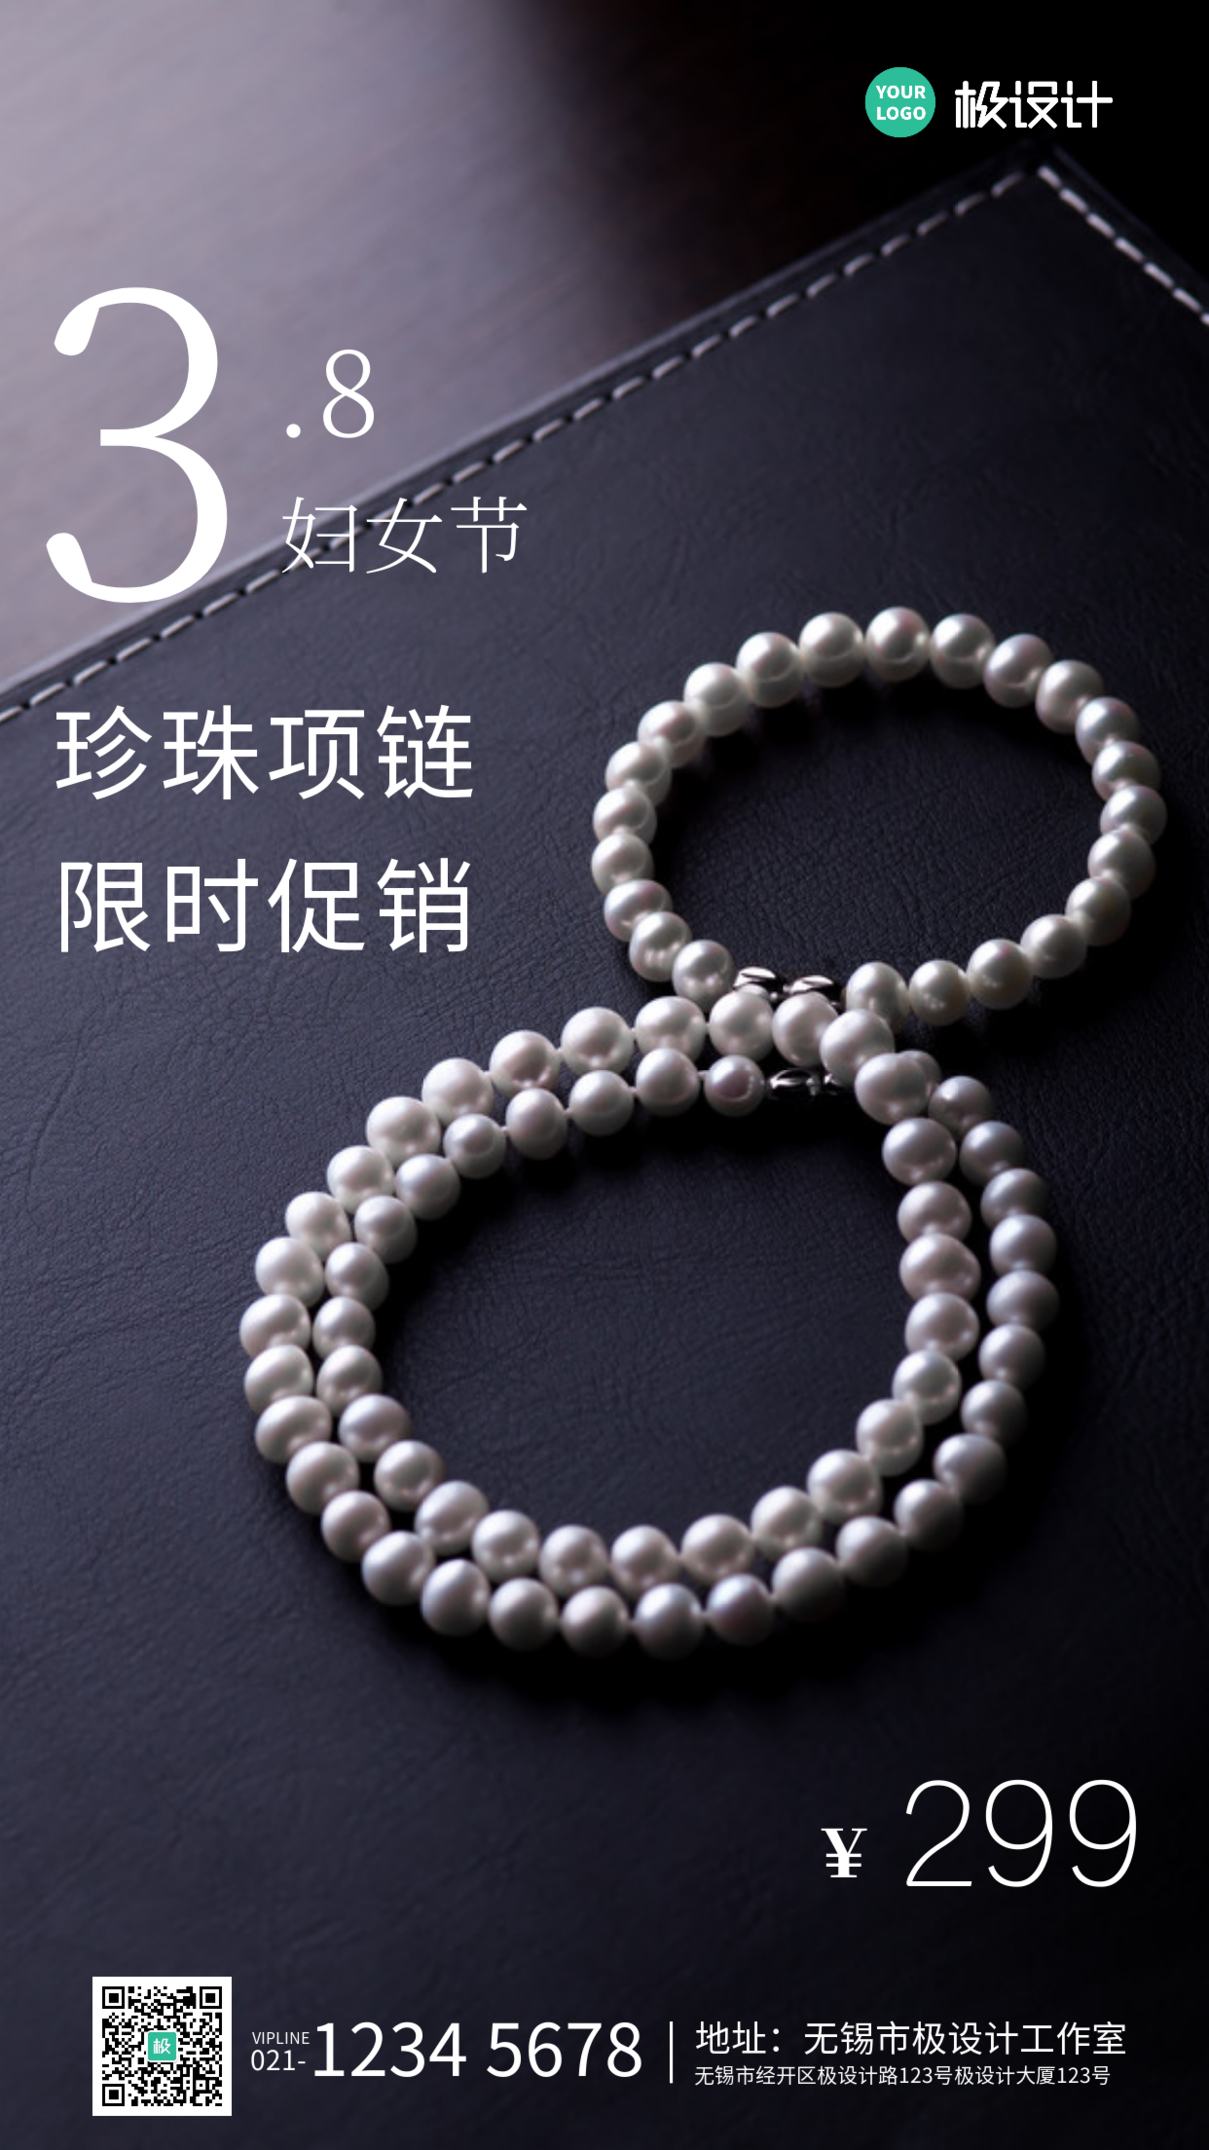 简约风格妇女节珍珠项链促销手机海报